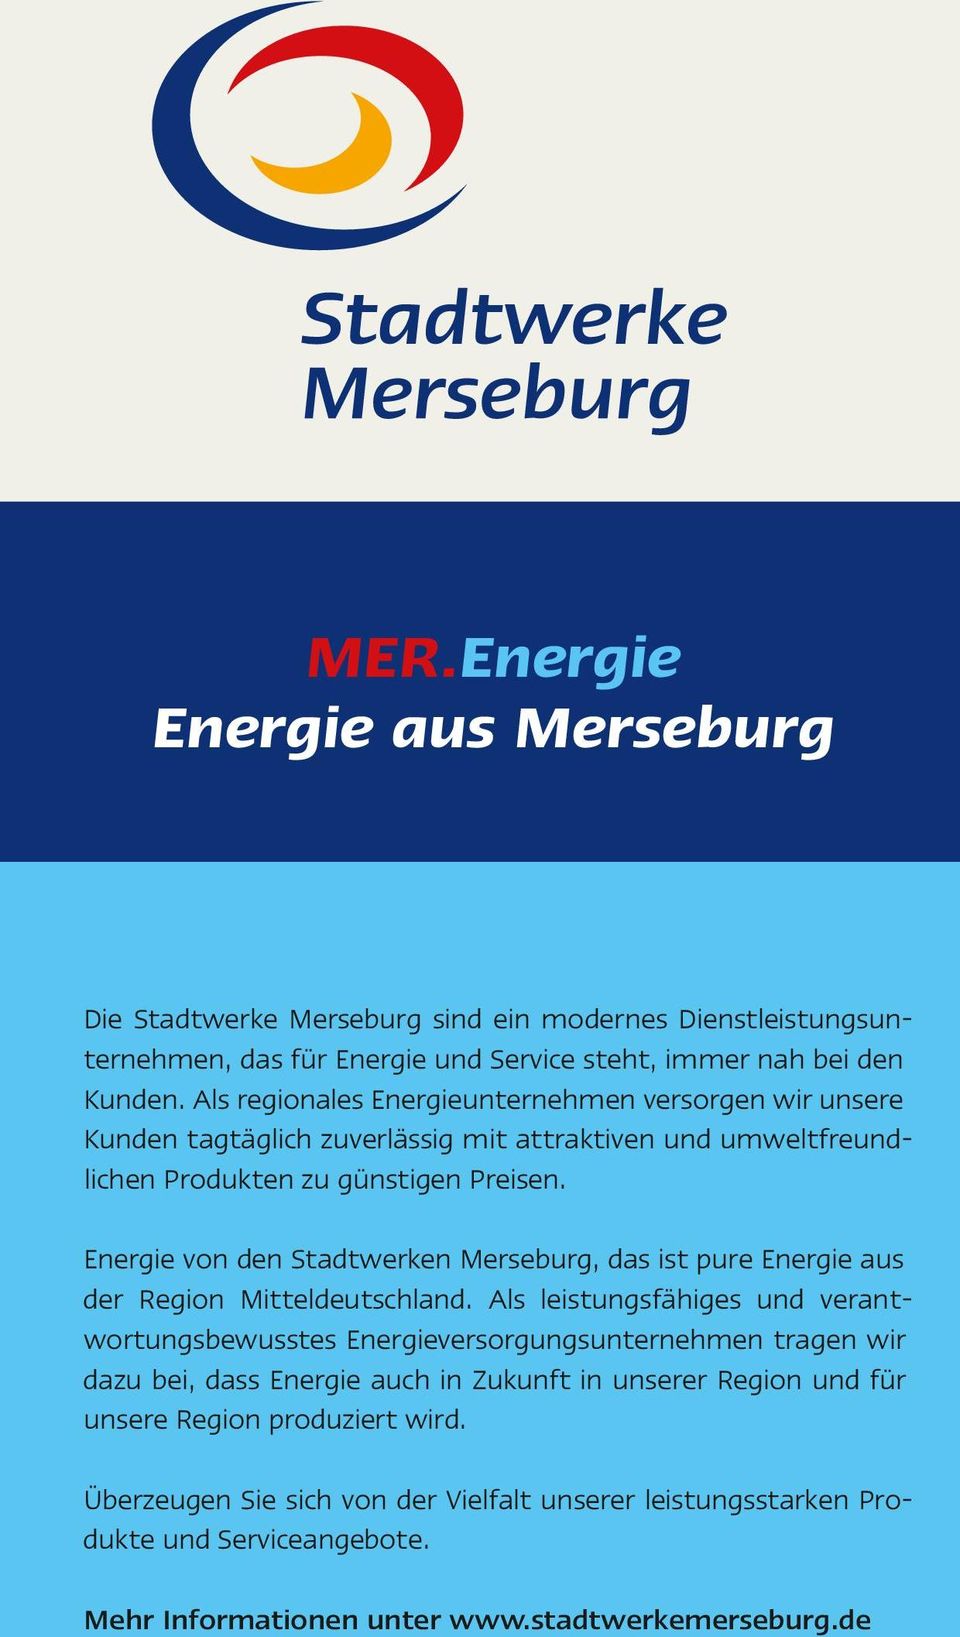 Energie von den Stadtwerken Merseburg, das ist pure Energie aus der Region Mitteldeutschland.